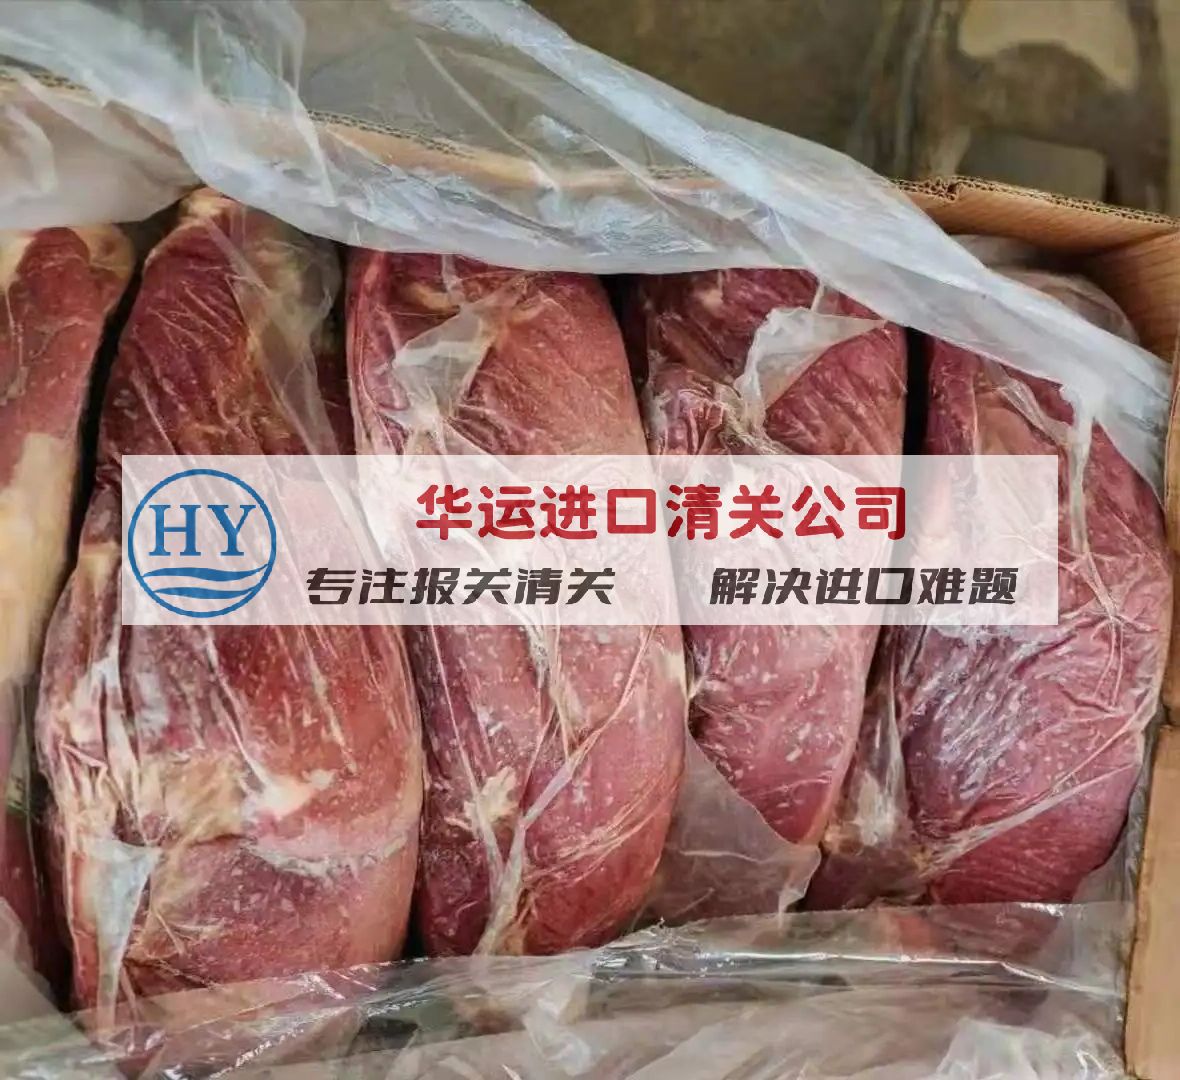 广州南沙港冷冻猪舌代理进口及报关公司 冻猪肉进口货运代理服务